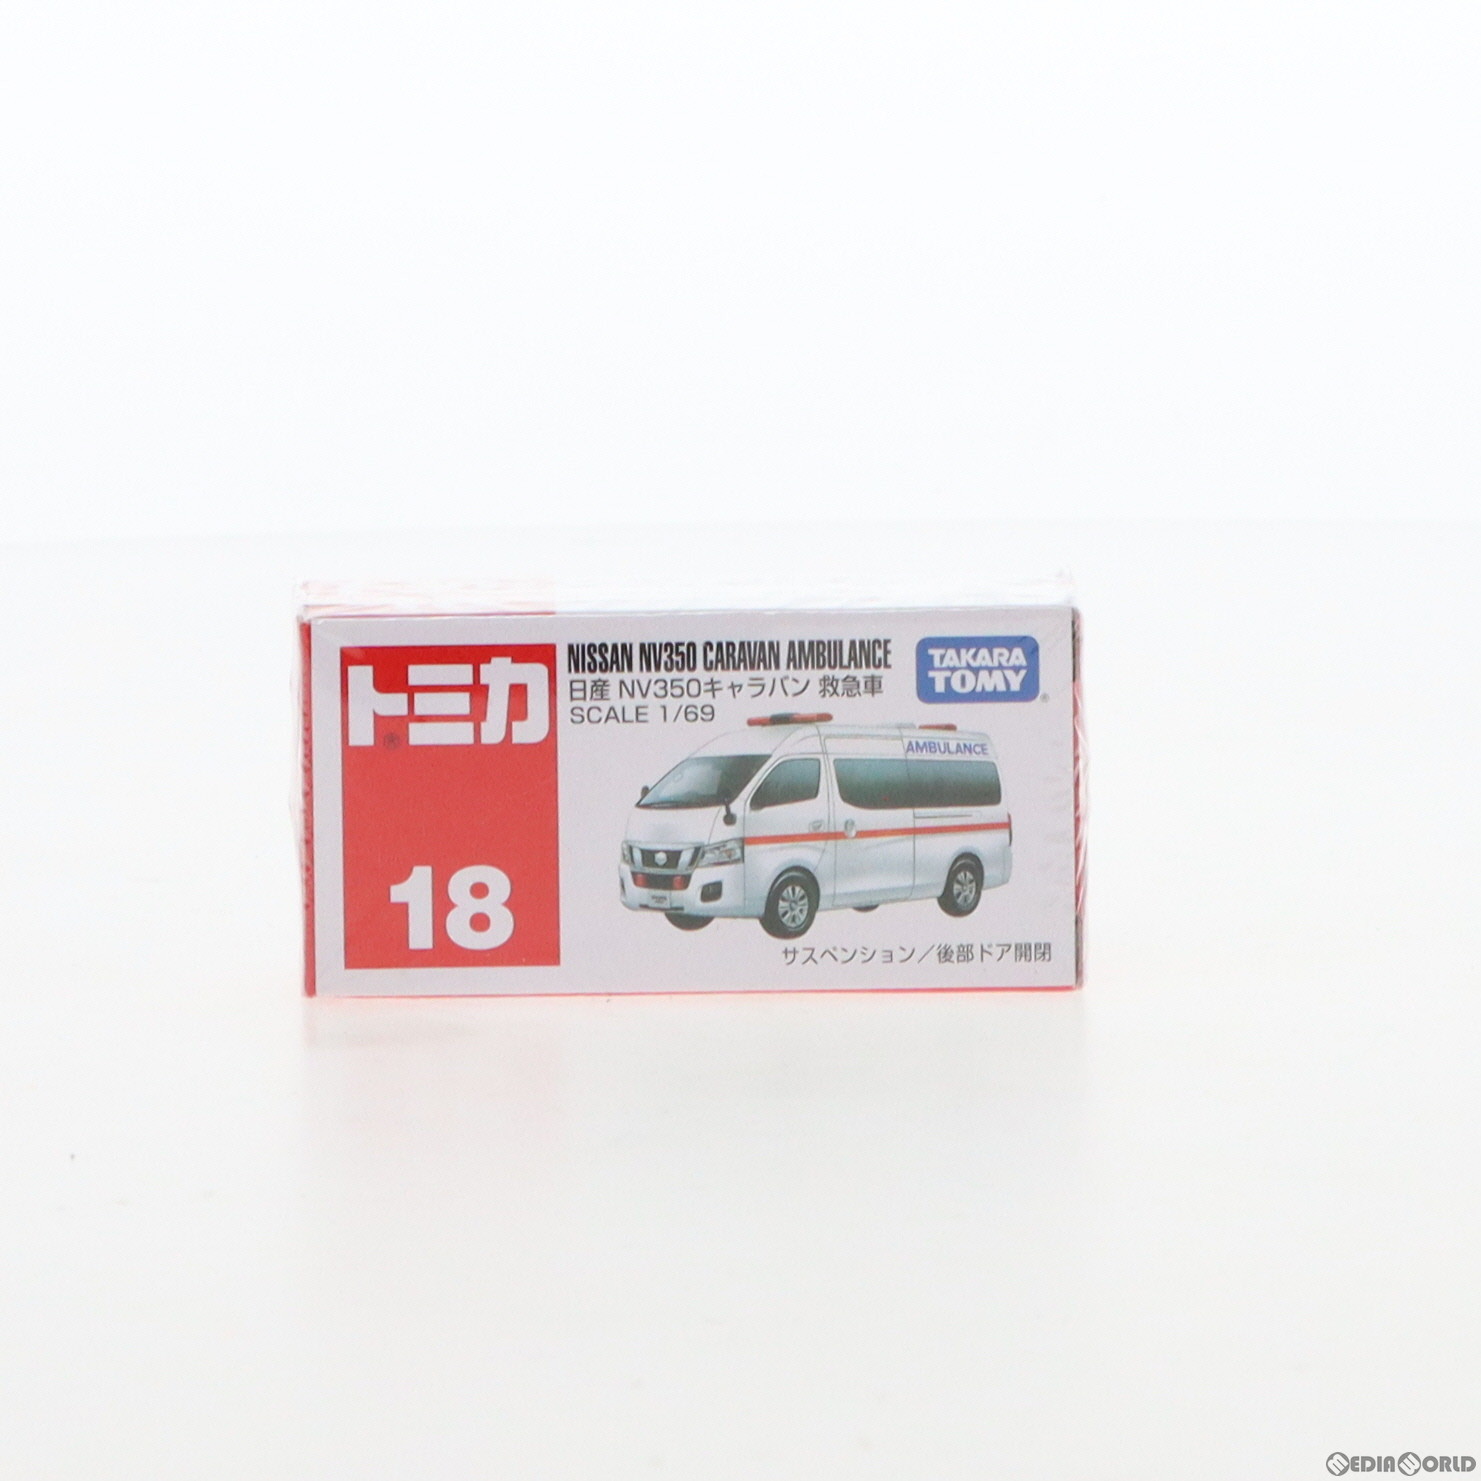 【中古即納】[MDL]トミカ 日産 NV350 キャラバン 救急車(ホワイト/赤箱) 1/69 完成品 ミニカー(No.18) タカラトミー(20130720)